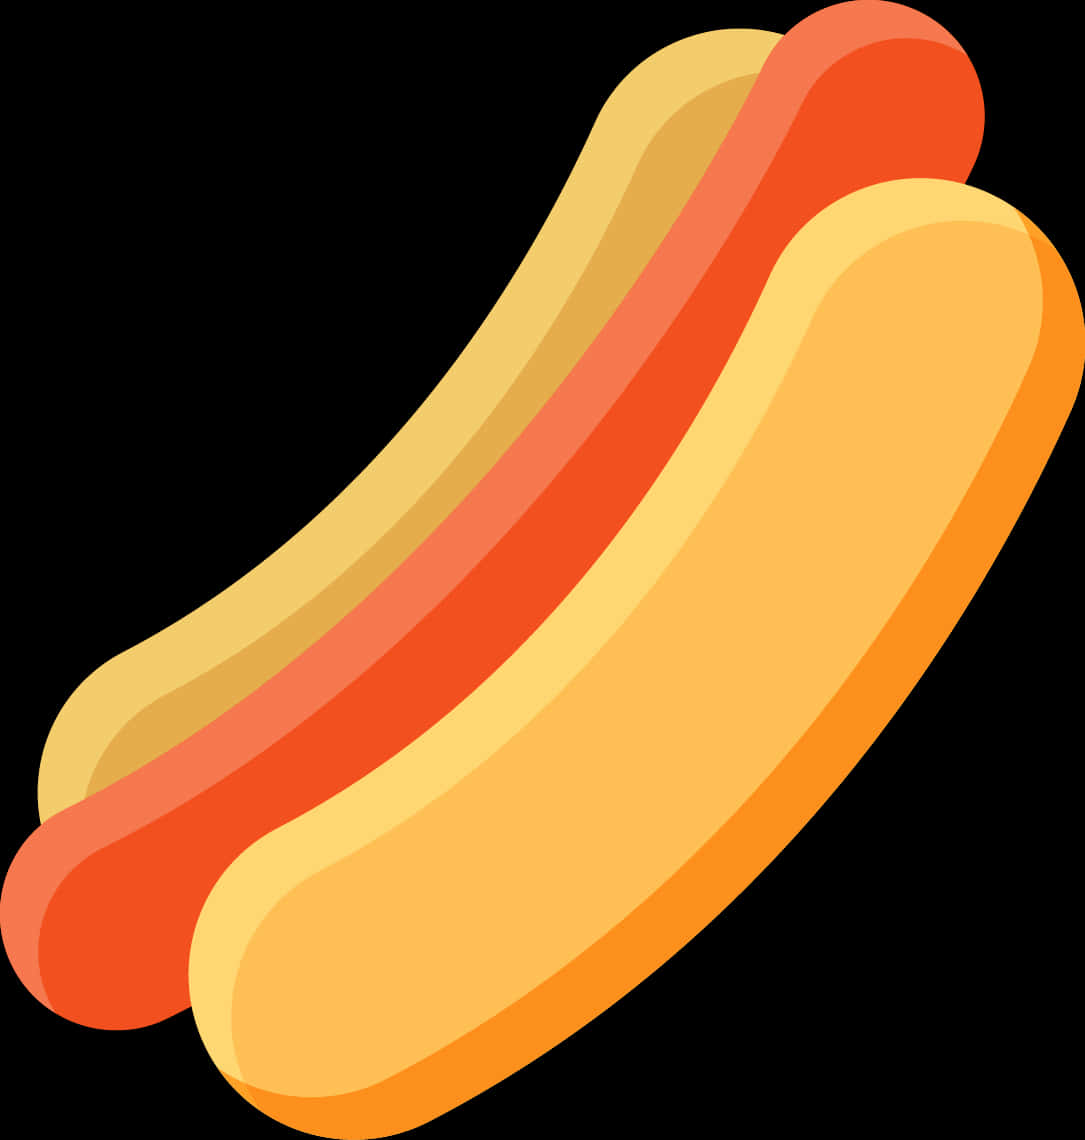 Hot Dog Vector Illustration PNG image